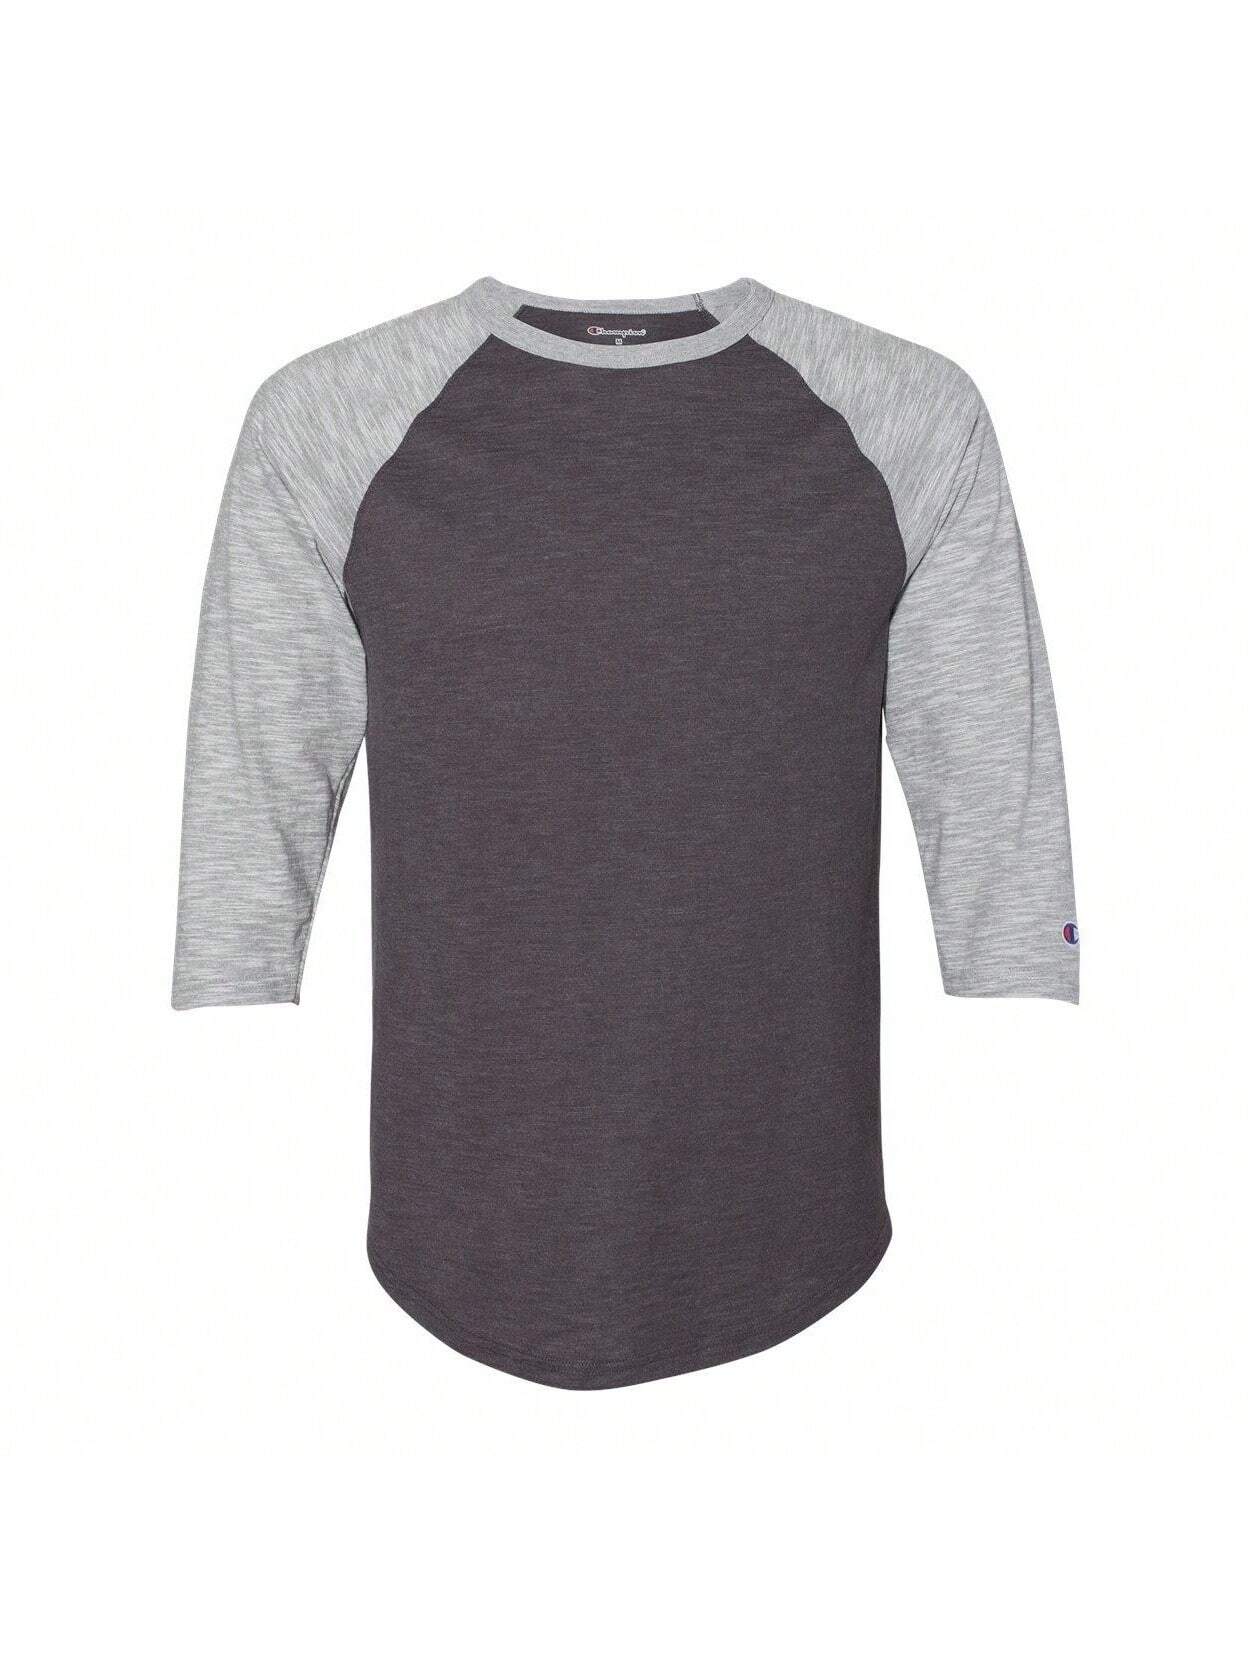 Модная бейсбольная футболка премиум-класса с рукавом три четверти реглан (угольно-хизер/серый Оксфорд), серый хизер